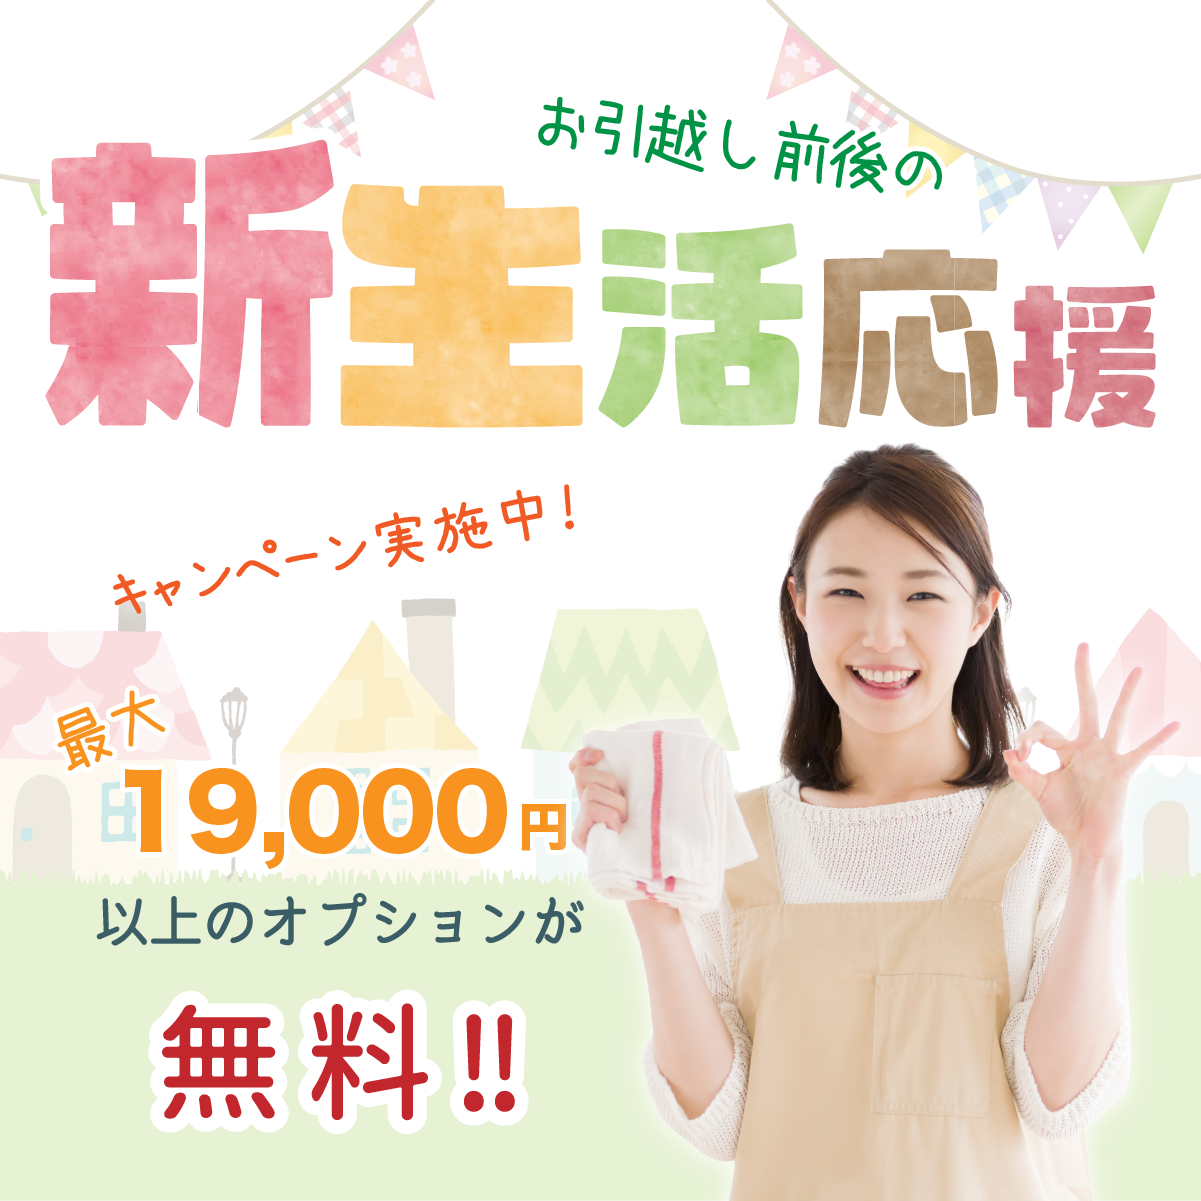 仙台の新生活応援キャンペーン